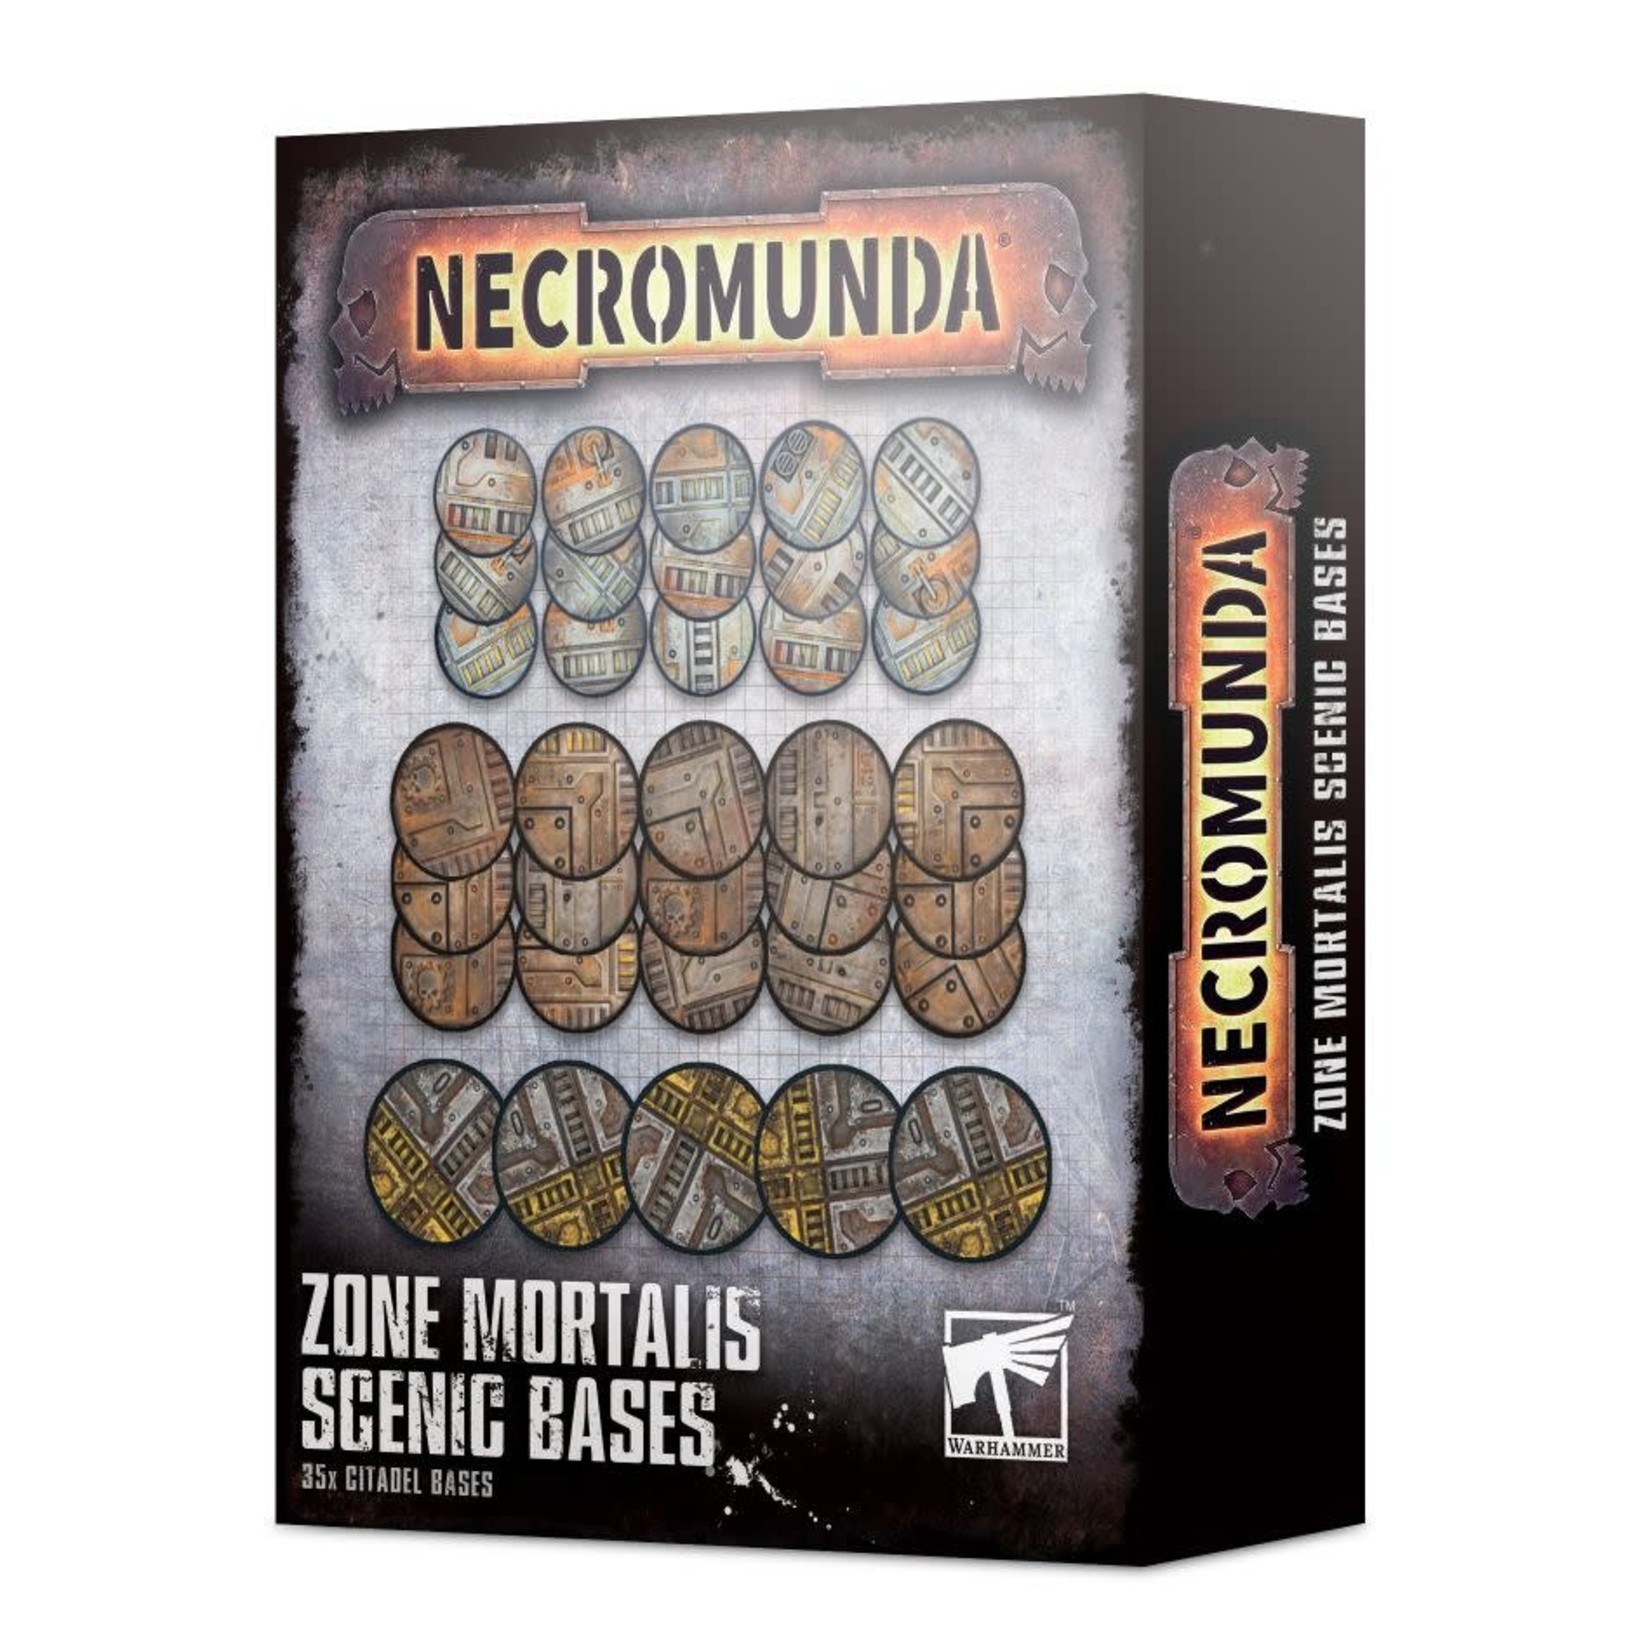 Necromunda Zone Mortalis Scenic Bases (35pc)